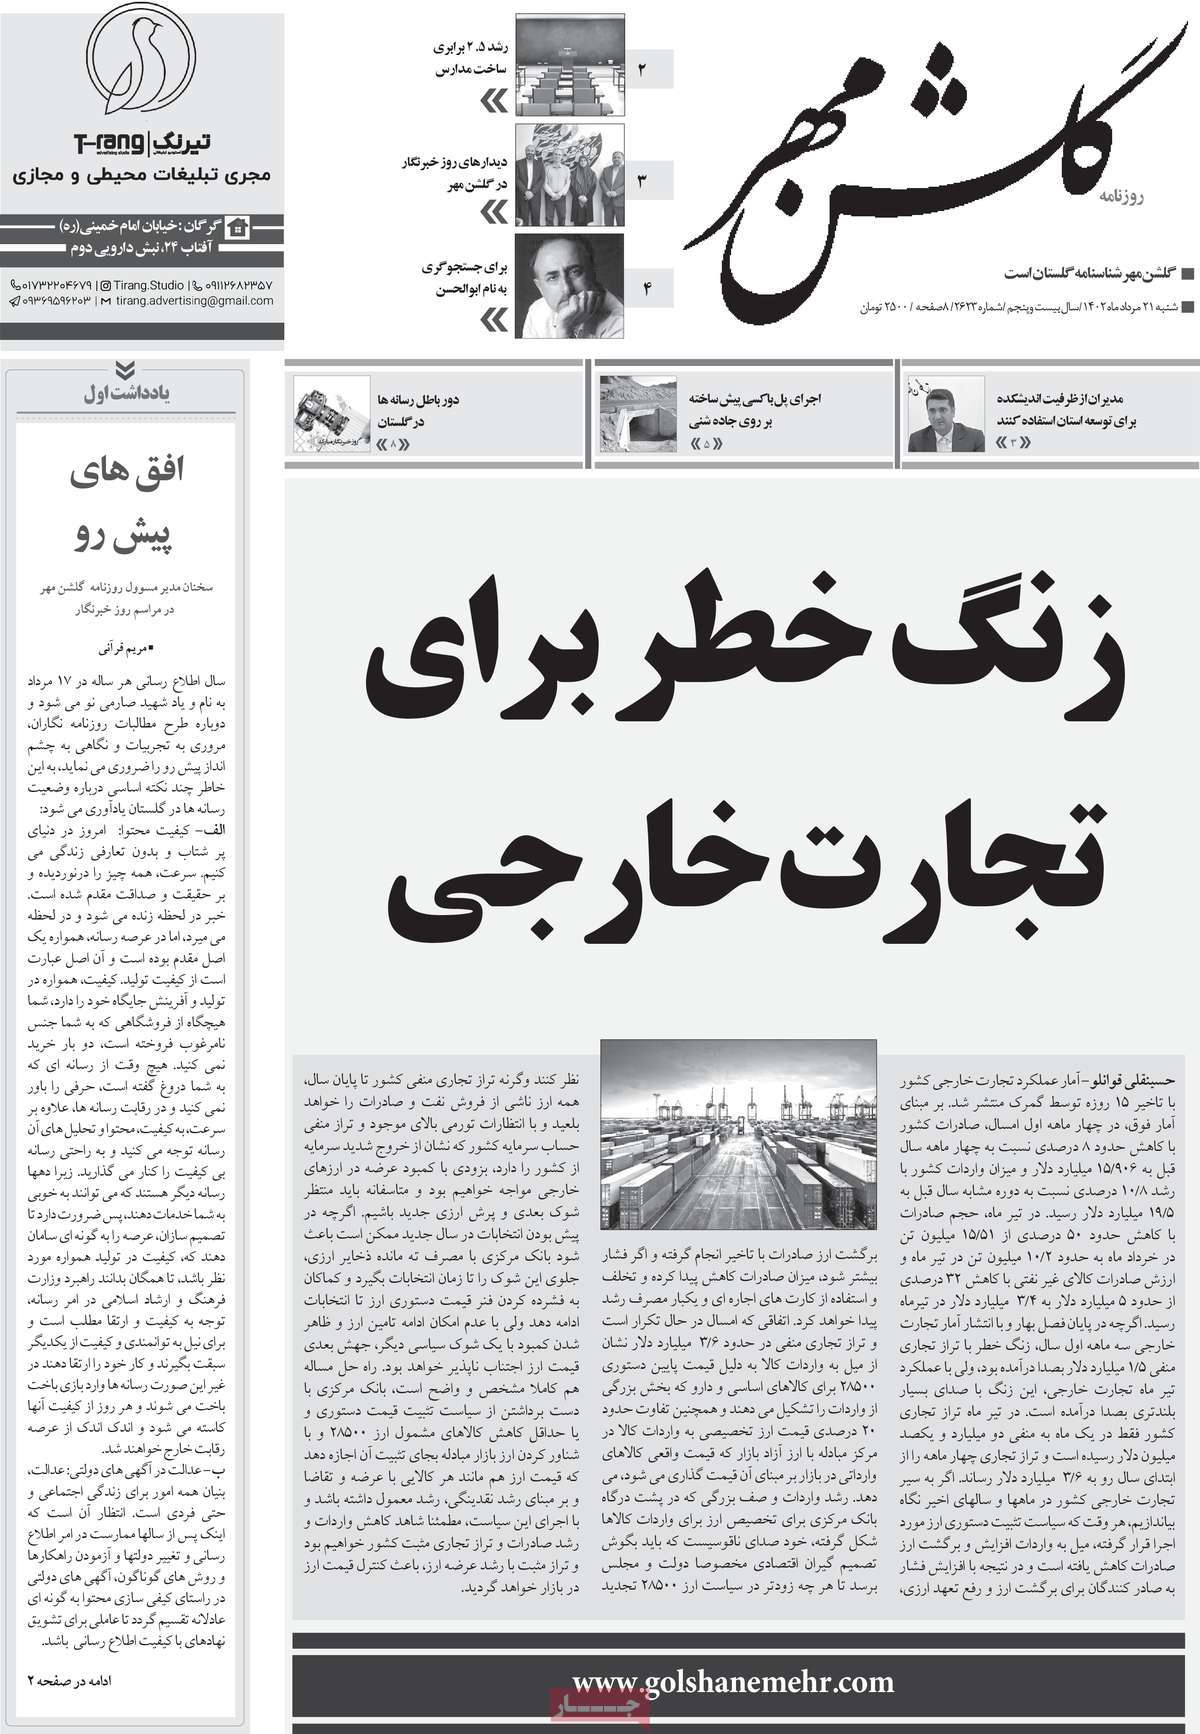 صفحه اول روزنامه های استانی امروز / روزنامه گلشن مهر